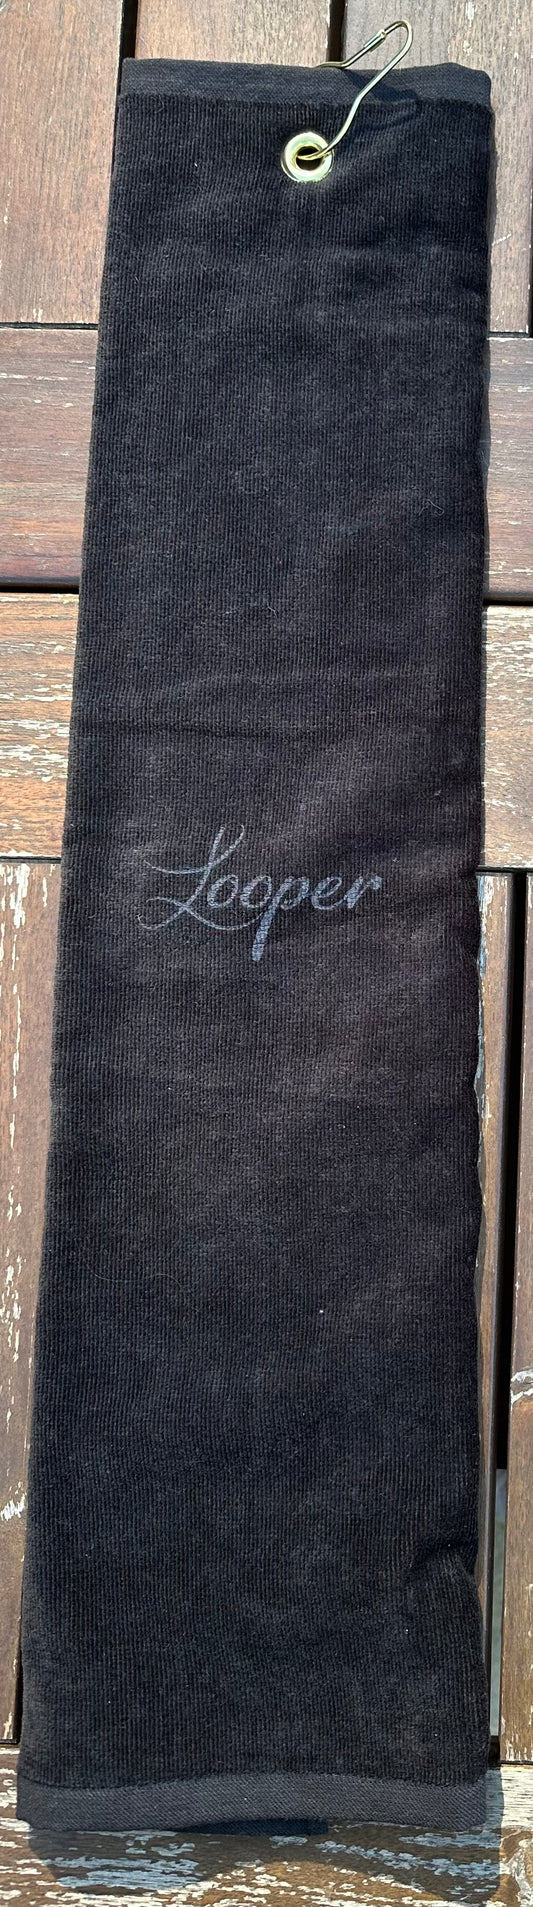 Looper Towel